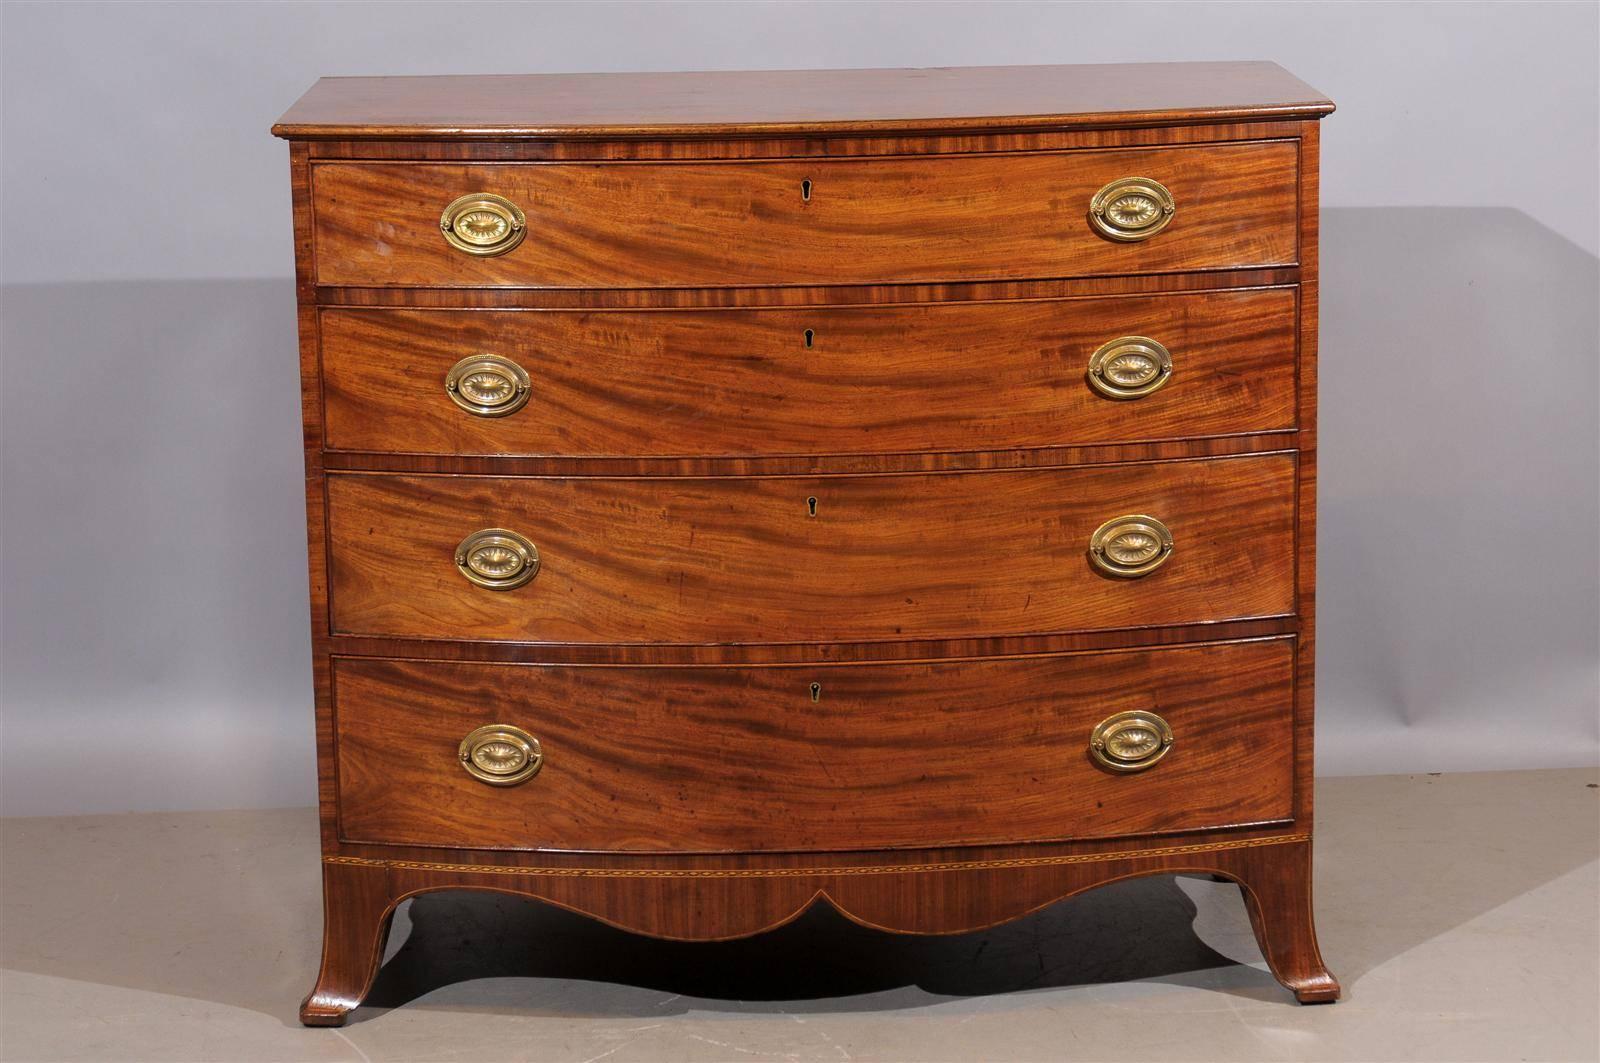 Early 19th century English Sheraton mahogany bowfront chest.